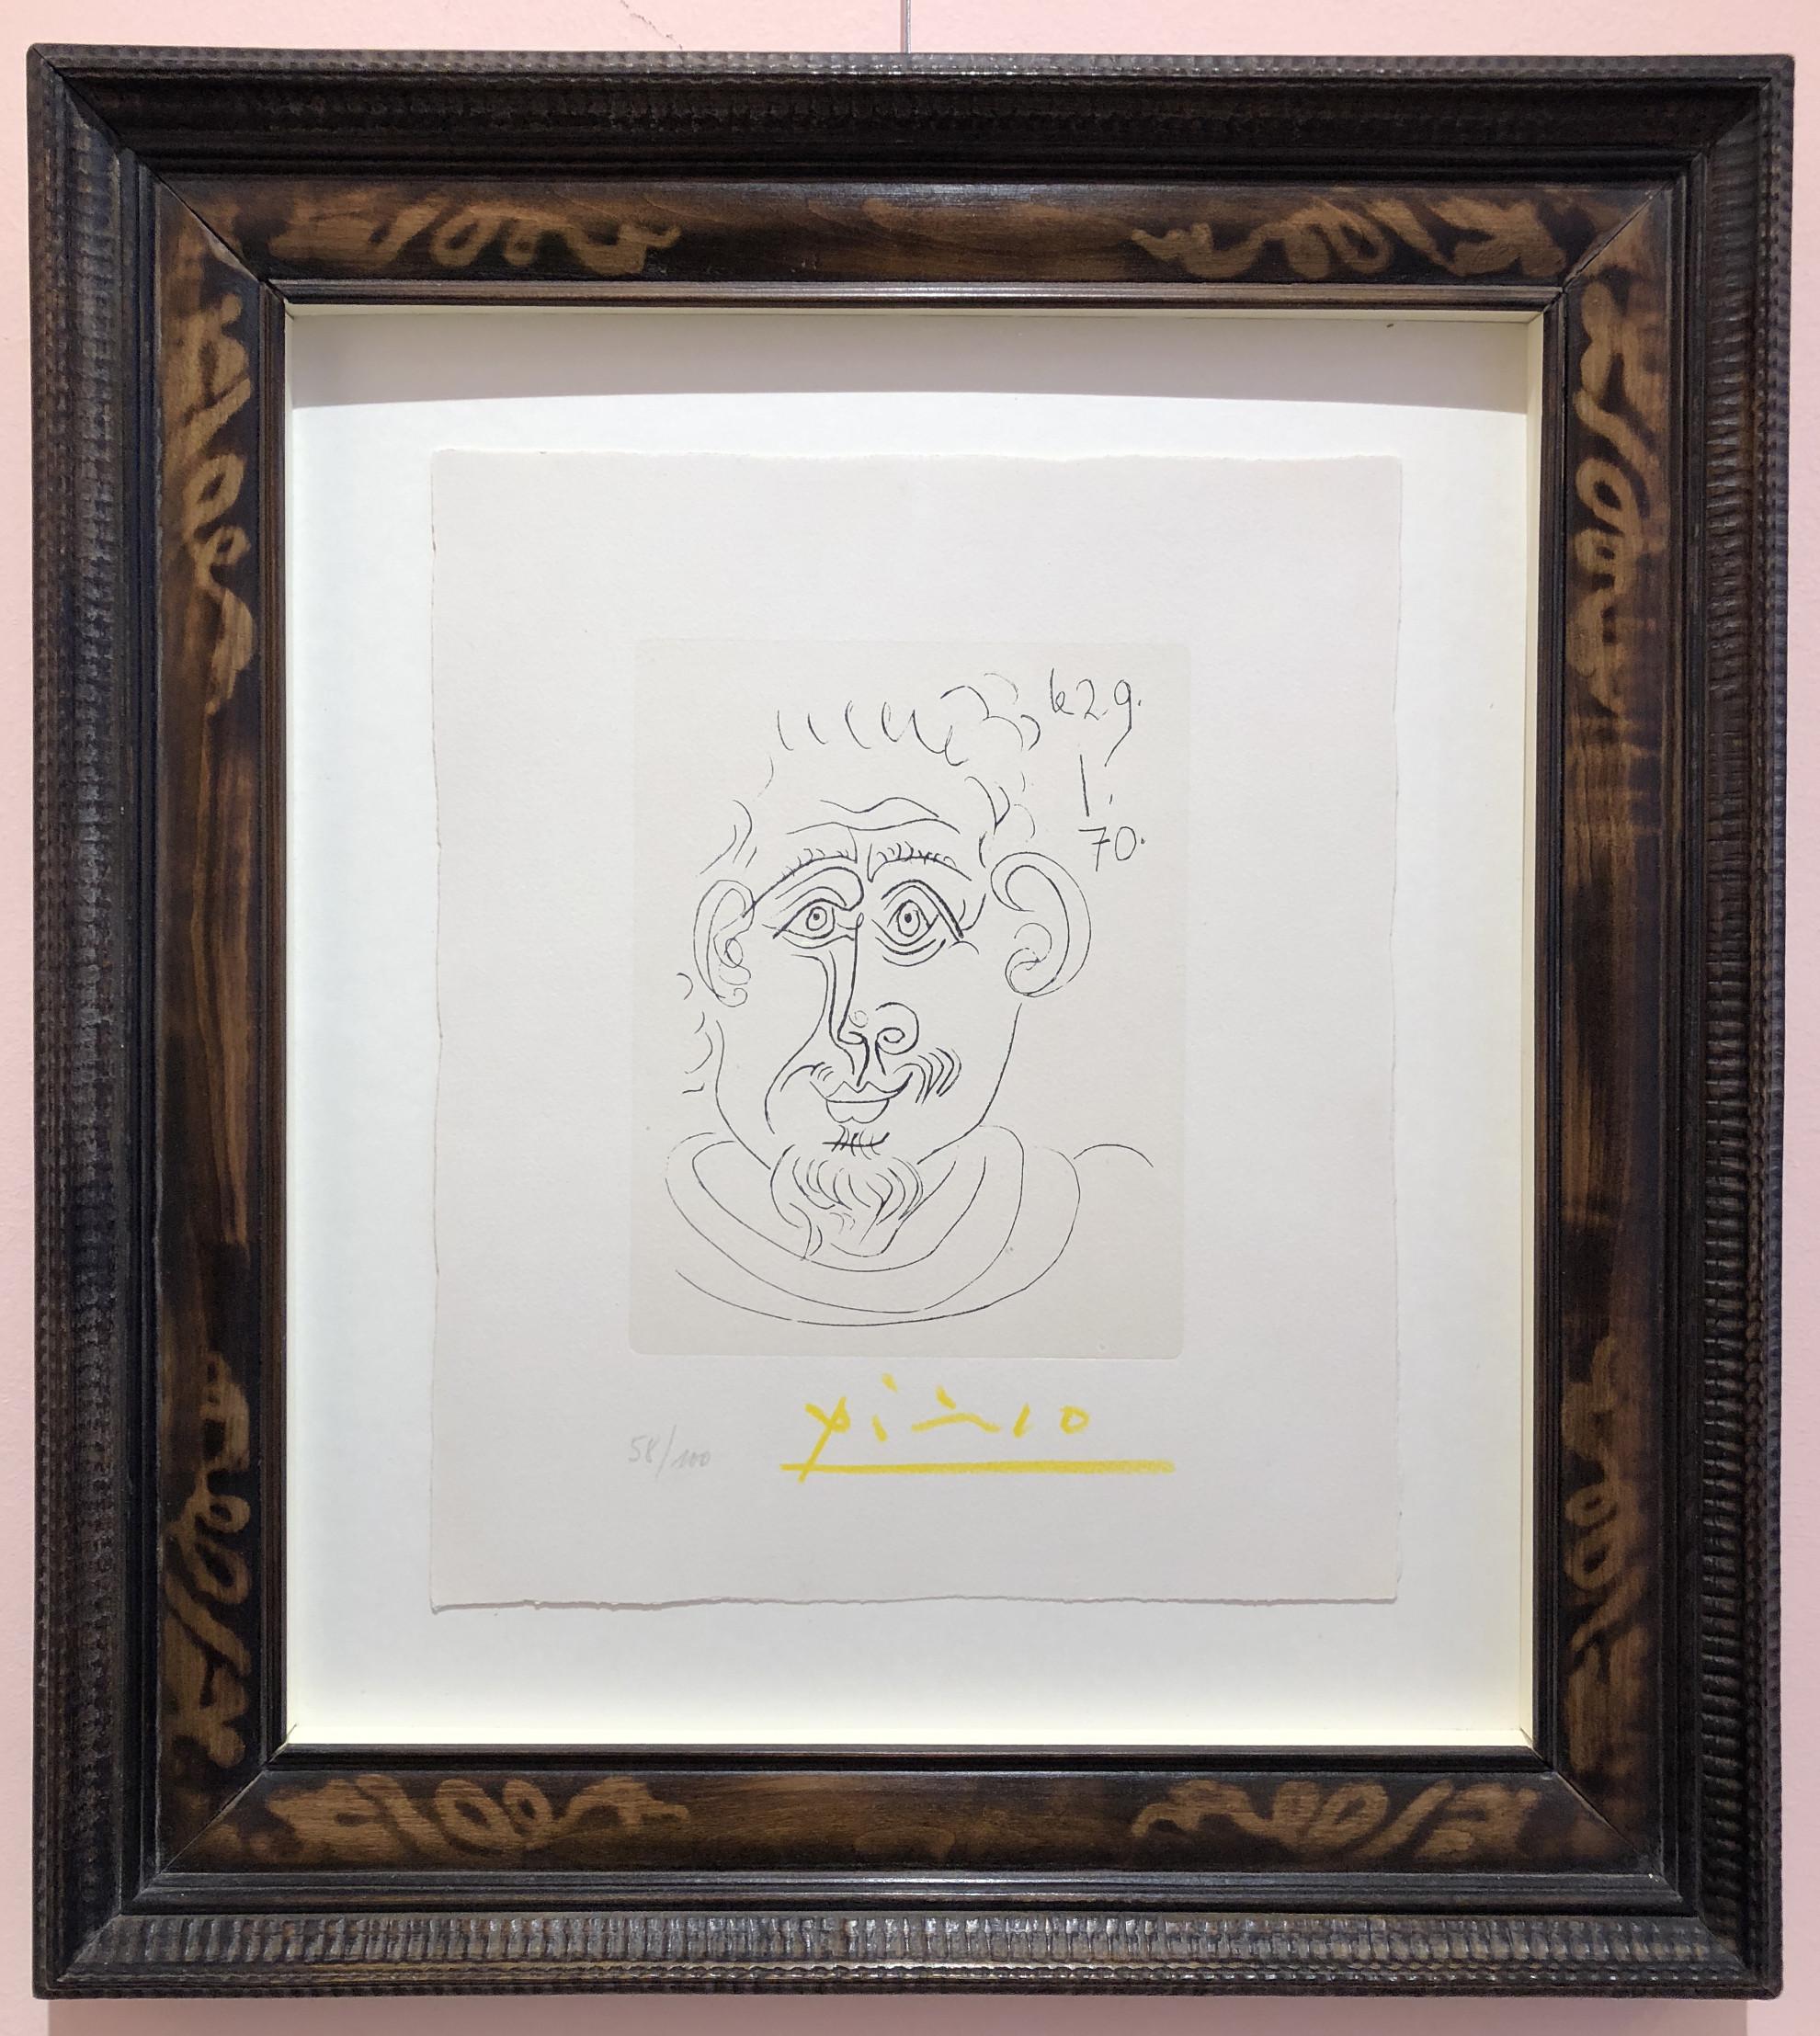 Tete d'homme au Bouc - Print by Pablo Picasso